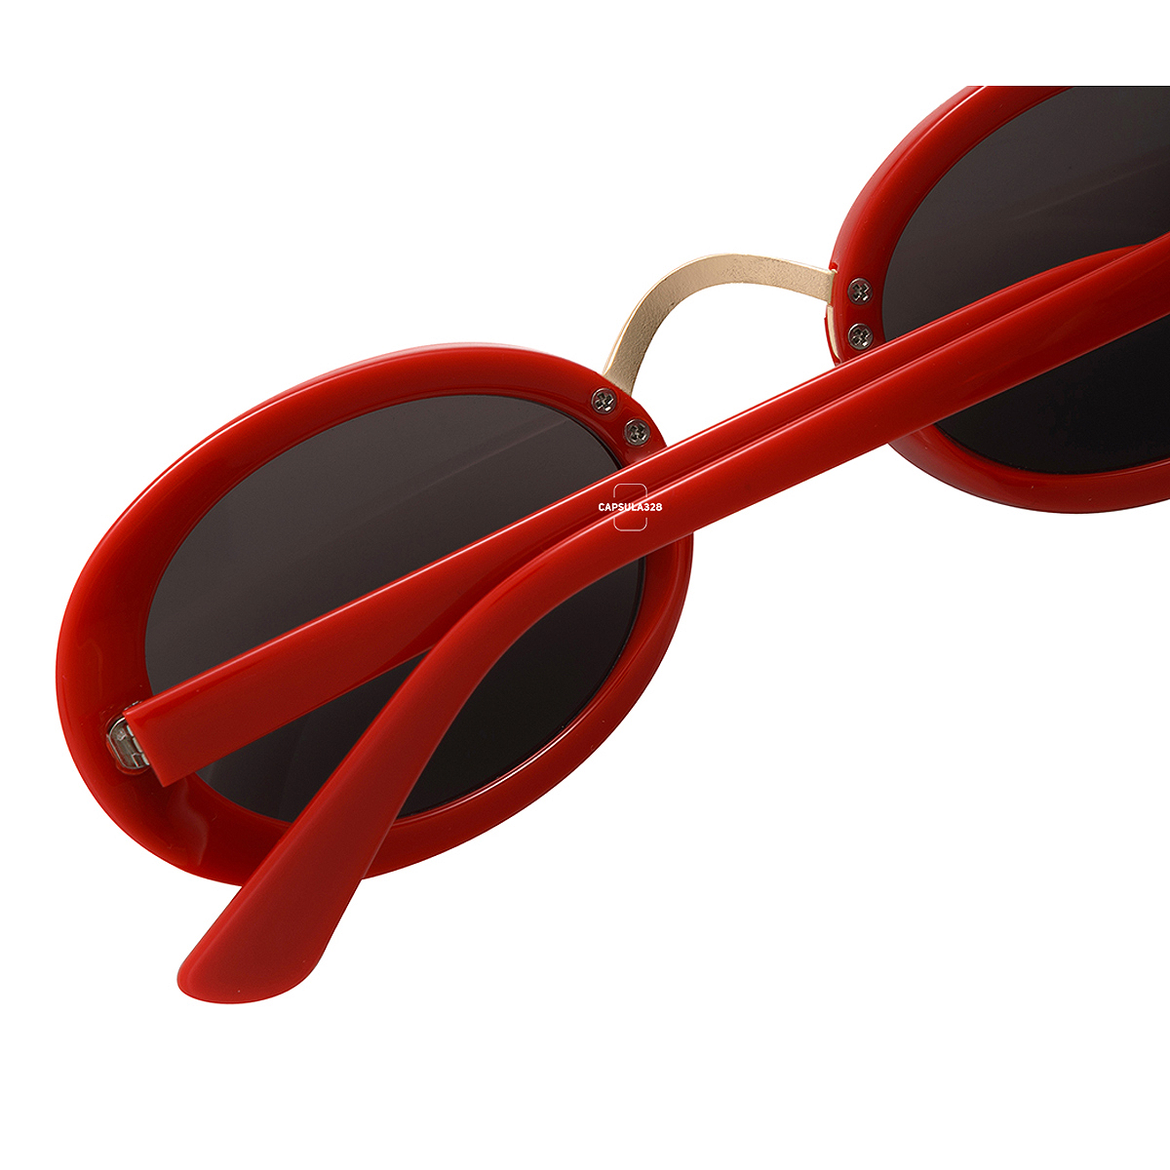 Солнцезащитные очки Mini Oval 4209